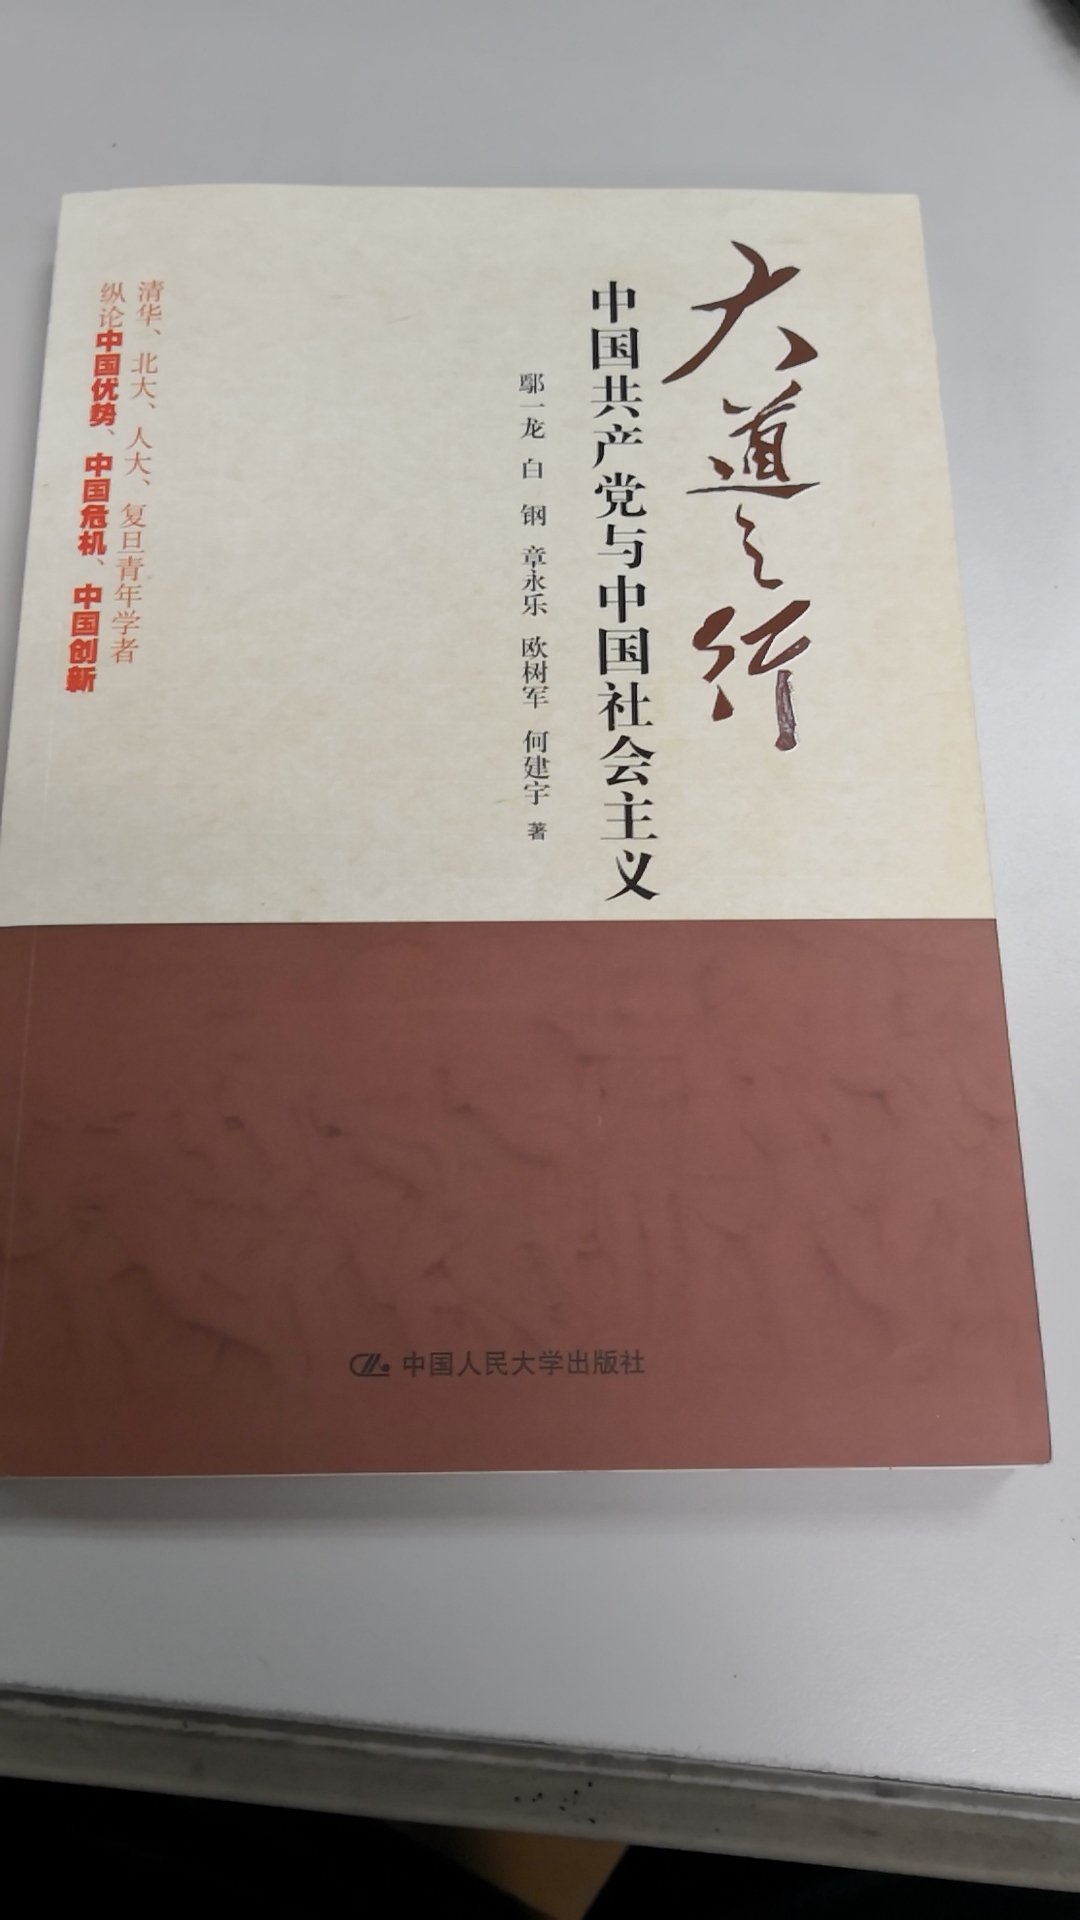 理论经典。《人间正道》揭示了中国共产党开创的中国道路的先进性。全书旨在打破一百年来国人对西方文明和体制的迷信，树立起对中国道路、中国体制。中国文化的自觉和自信。